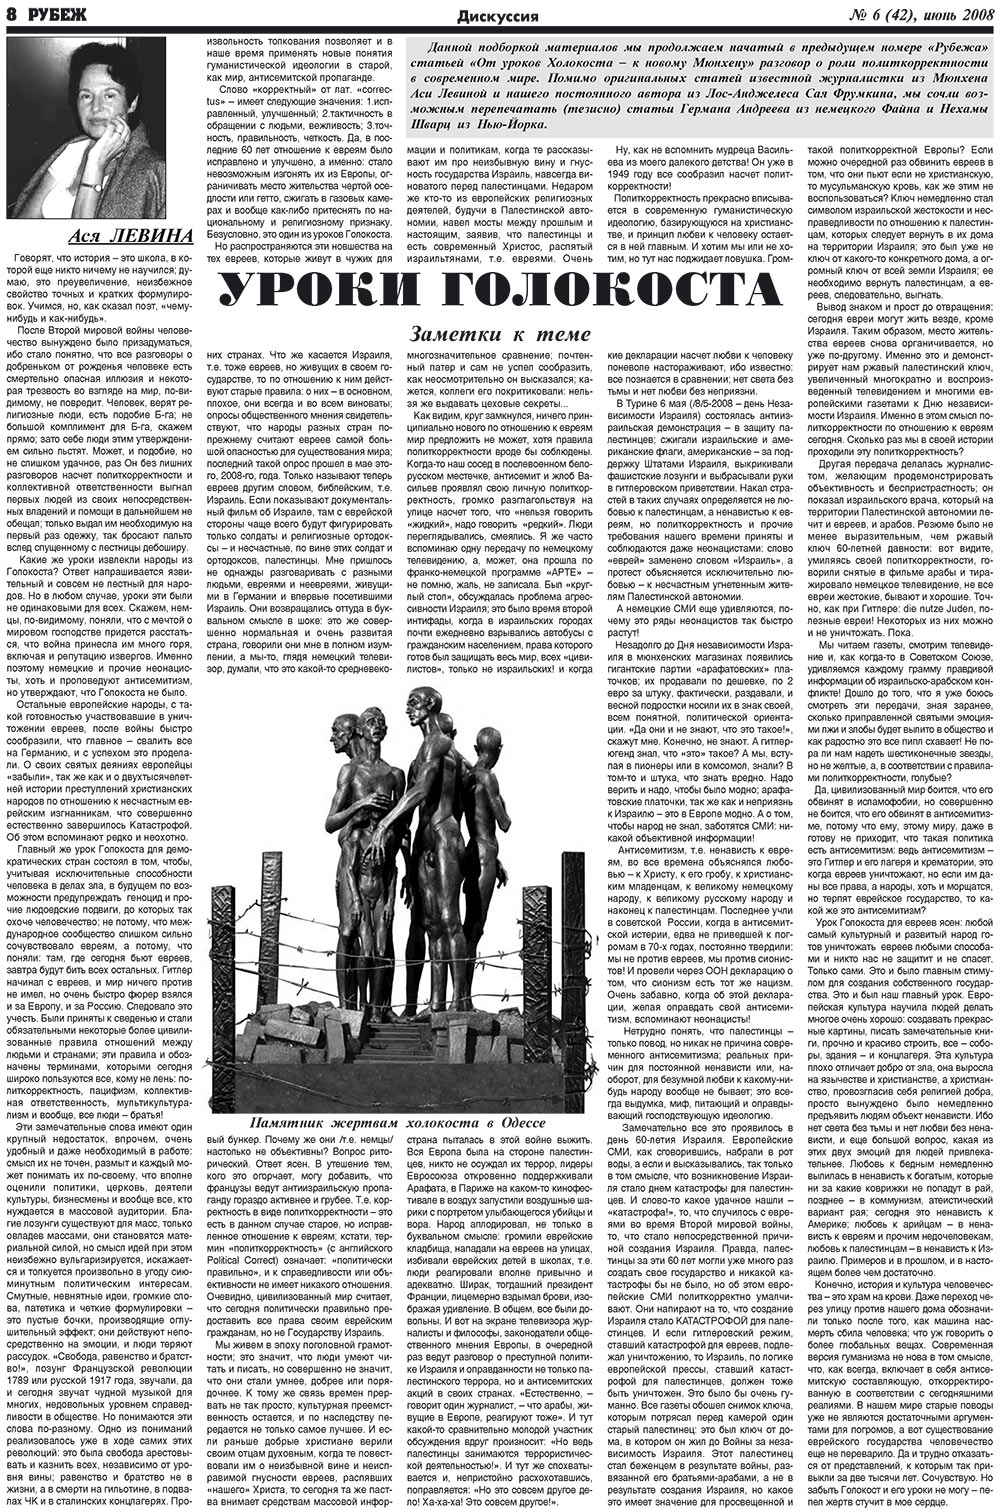 Рубеж (газета). 2008 год, номер 6, стр. 8